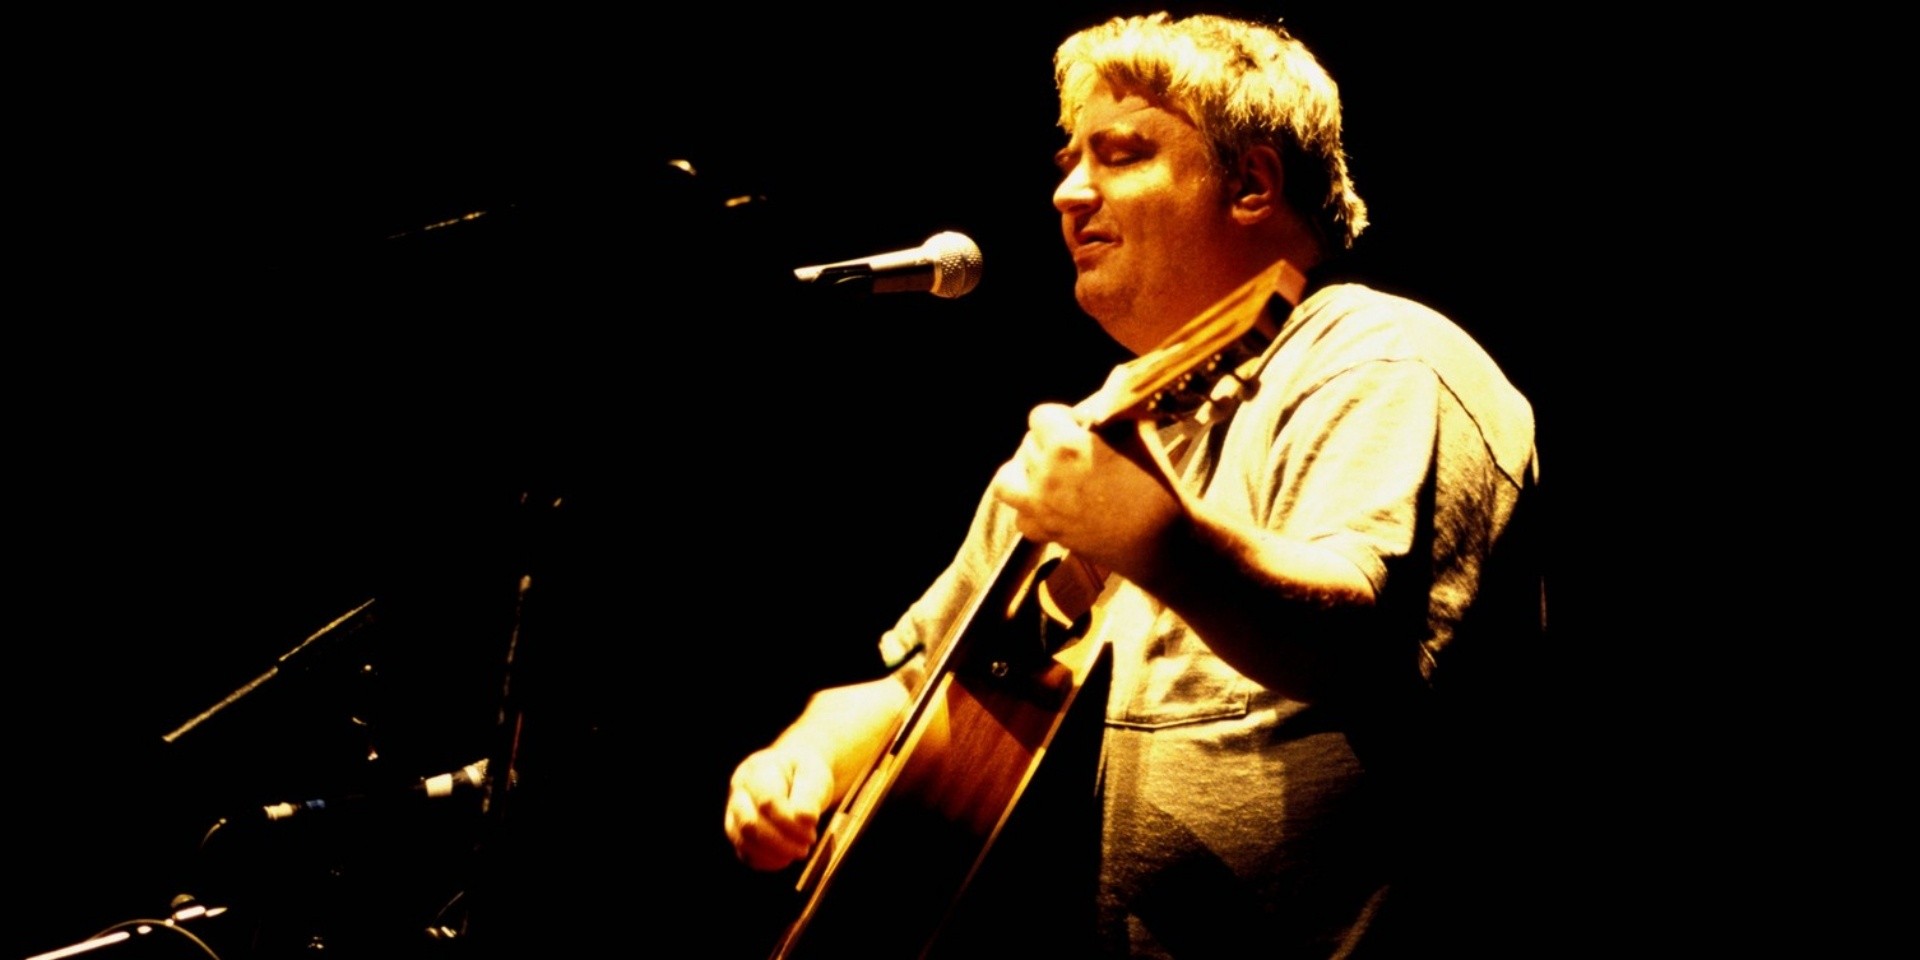 Legendary cult singer-songwriter Daniel Johnston dies of heart attack, aged 58